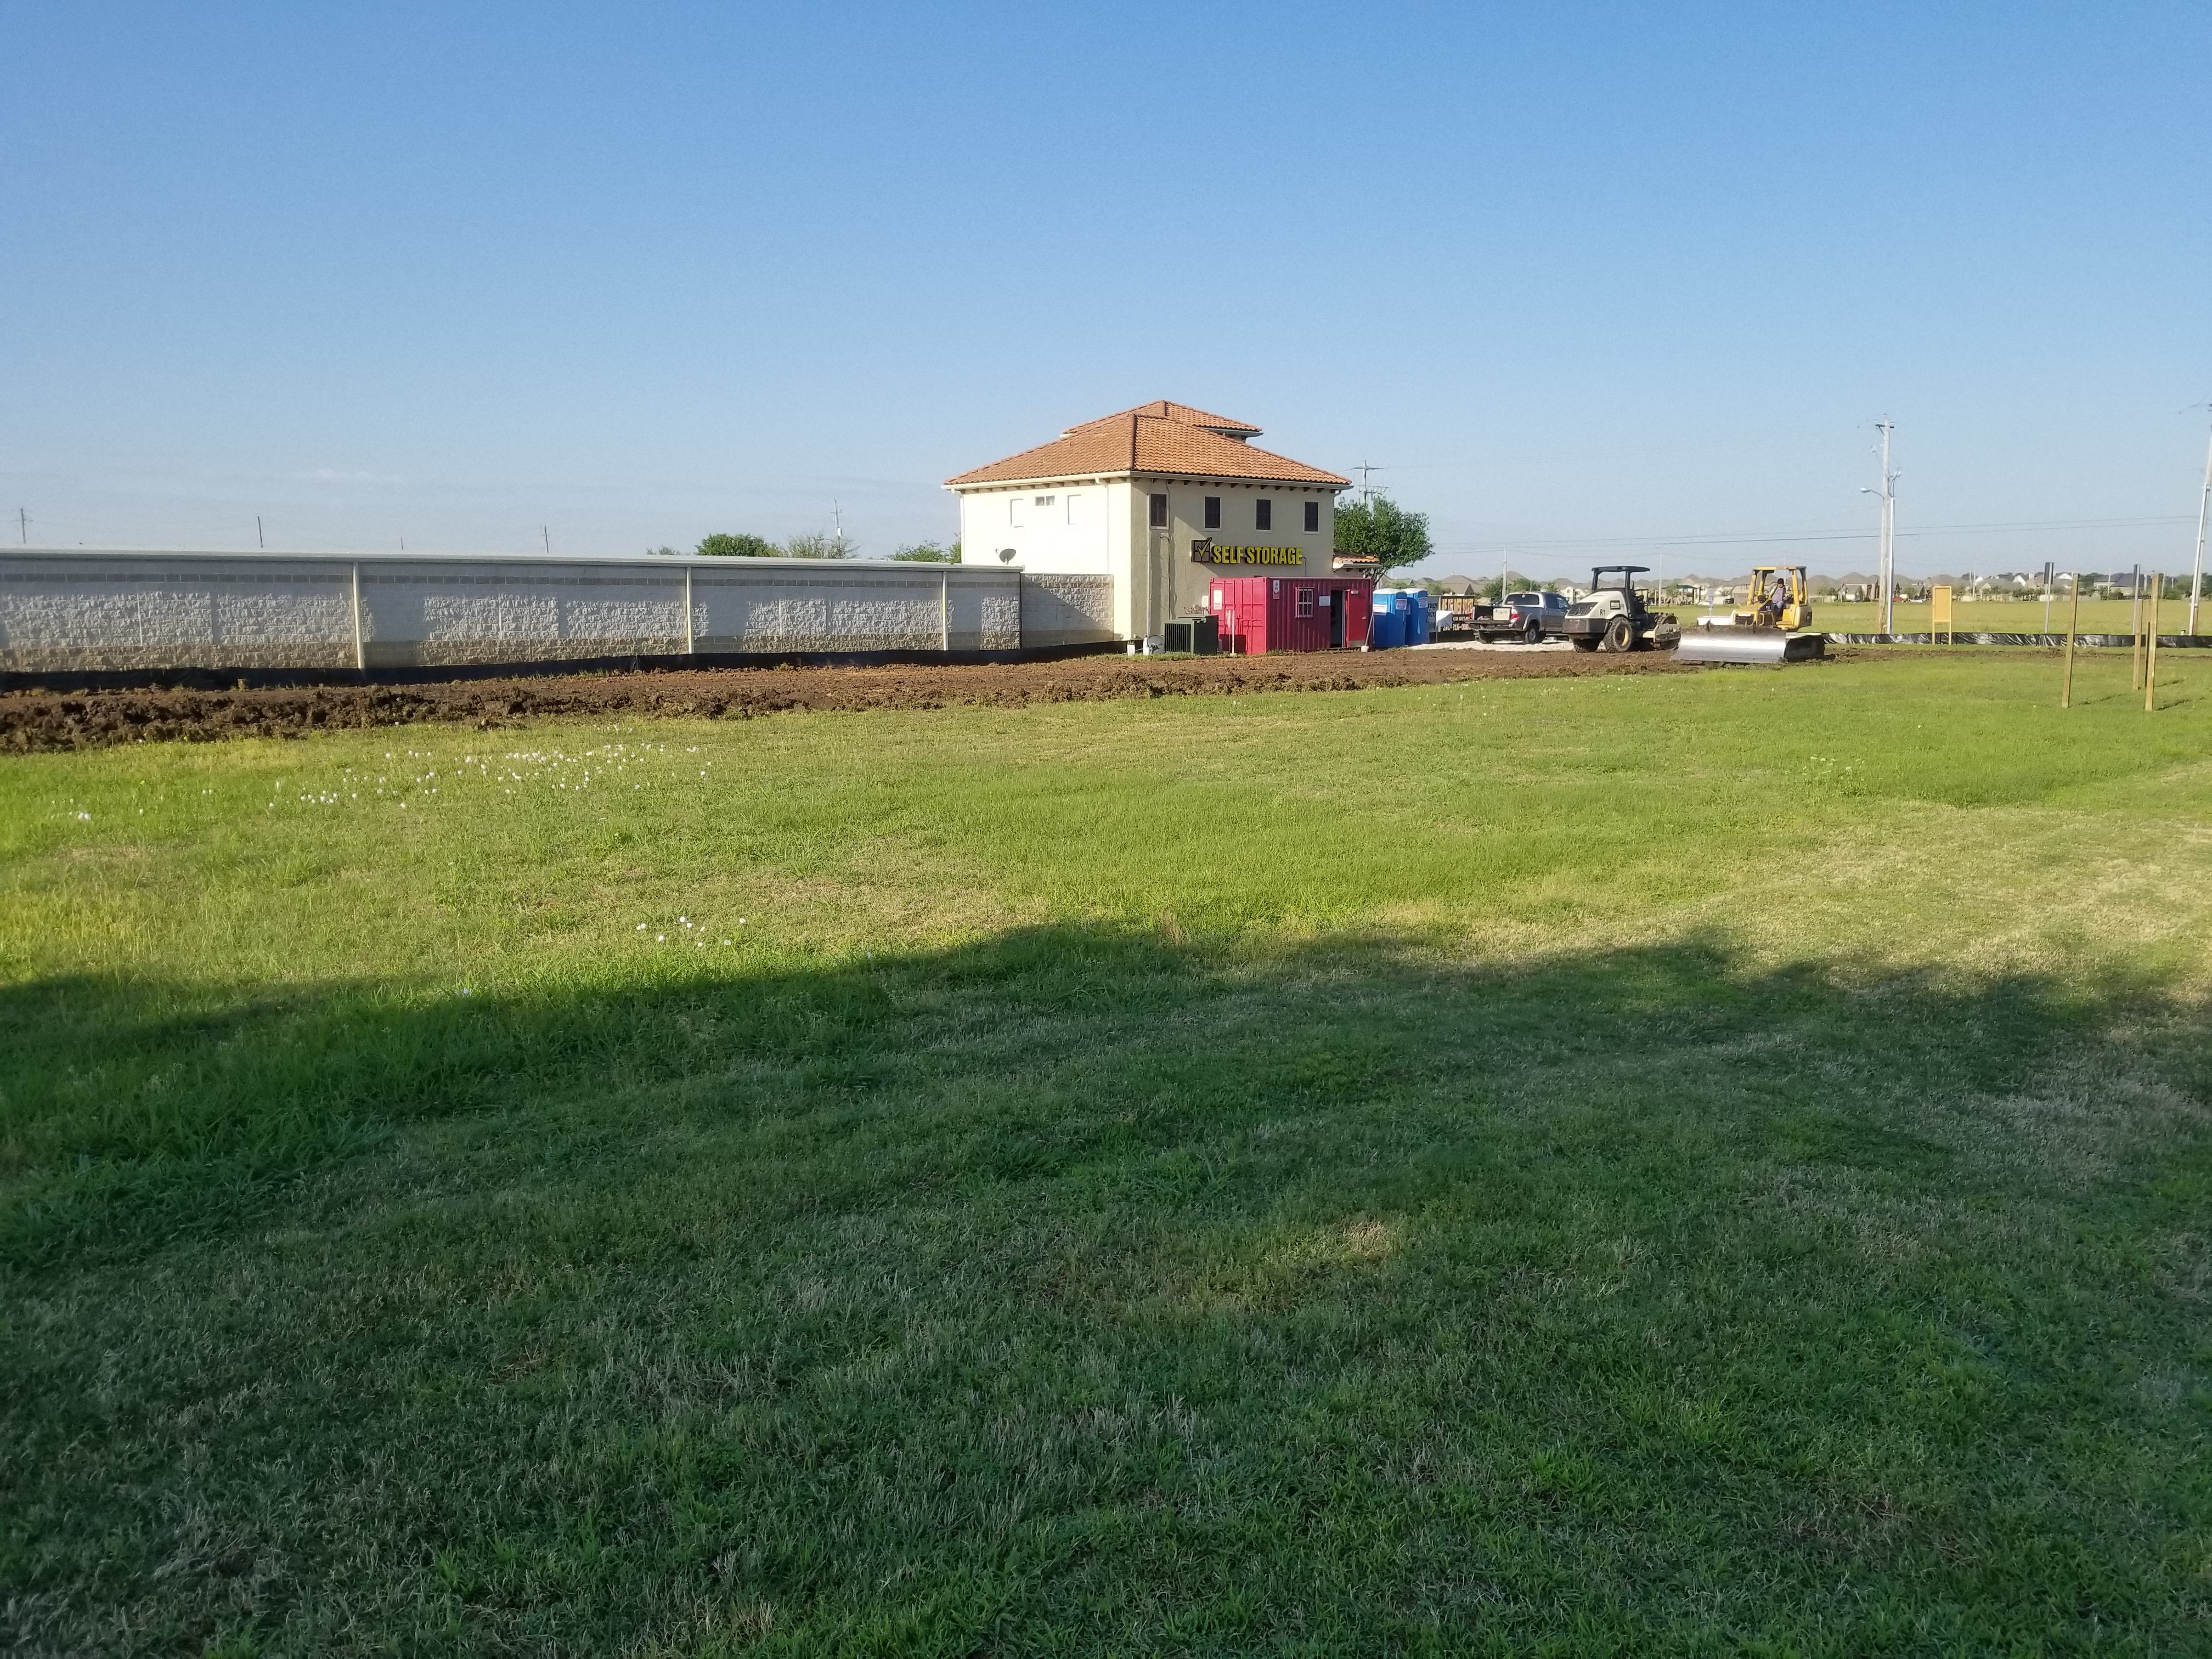 JJ's Car Wash - League CIty, Texas - Fidelis Delvelopment